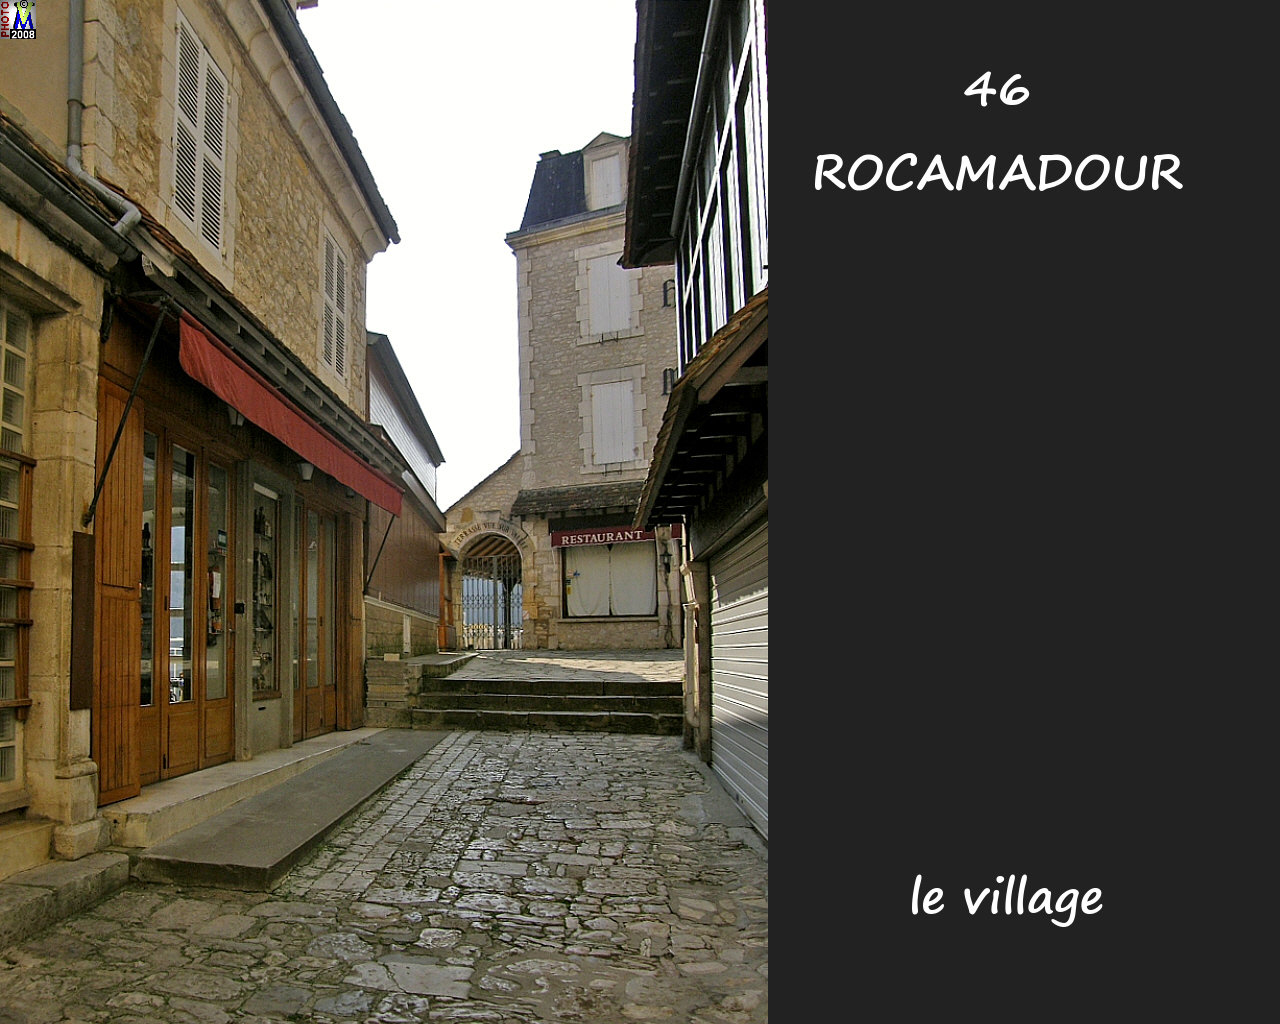 46ROCAMADOUR_village_184.jpg